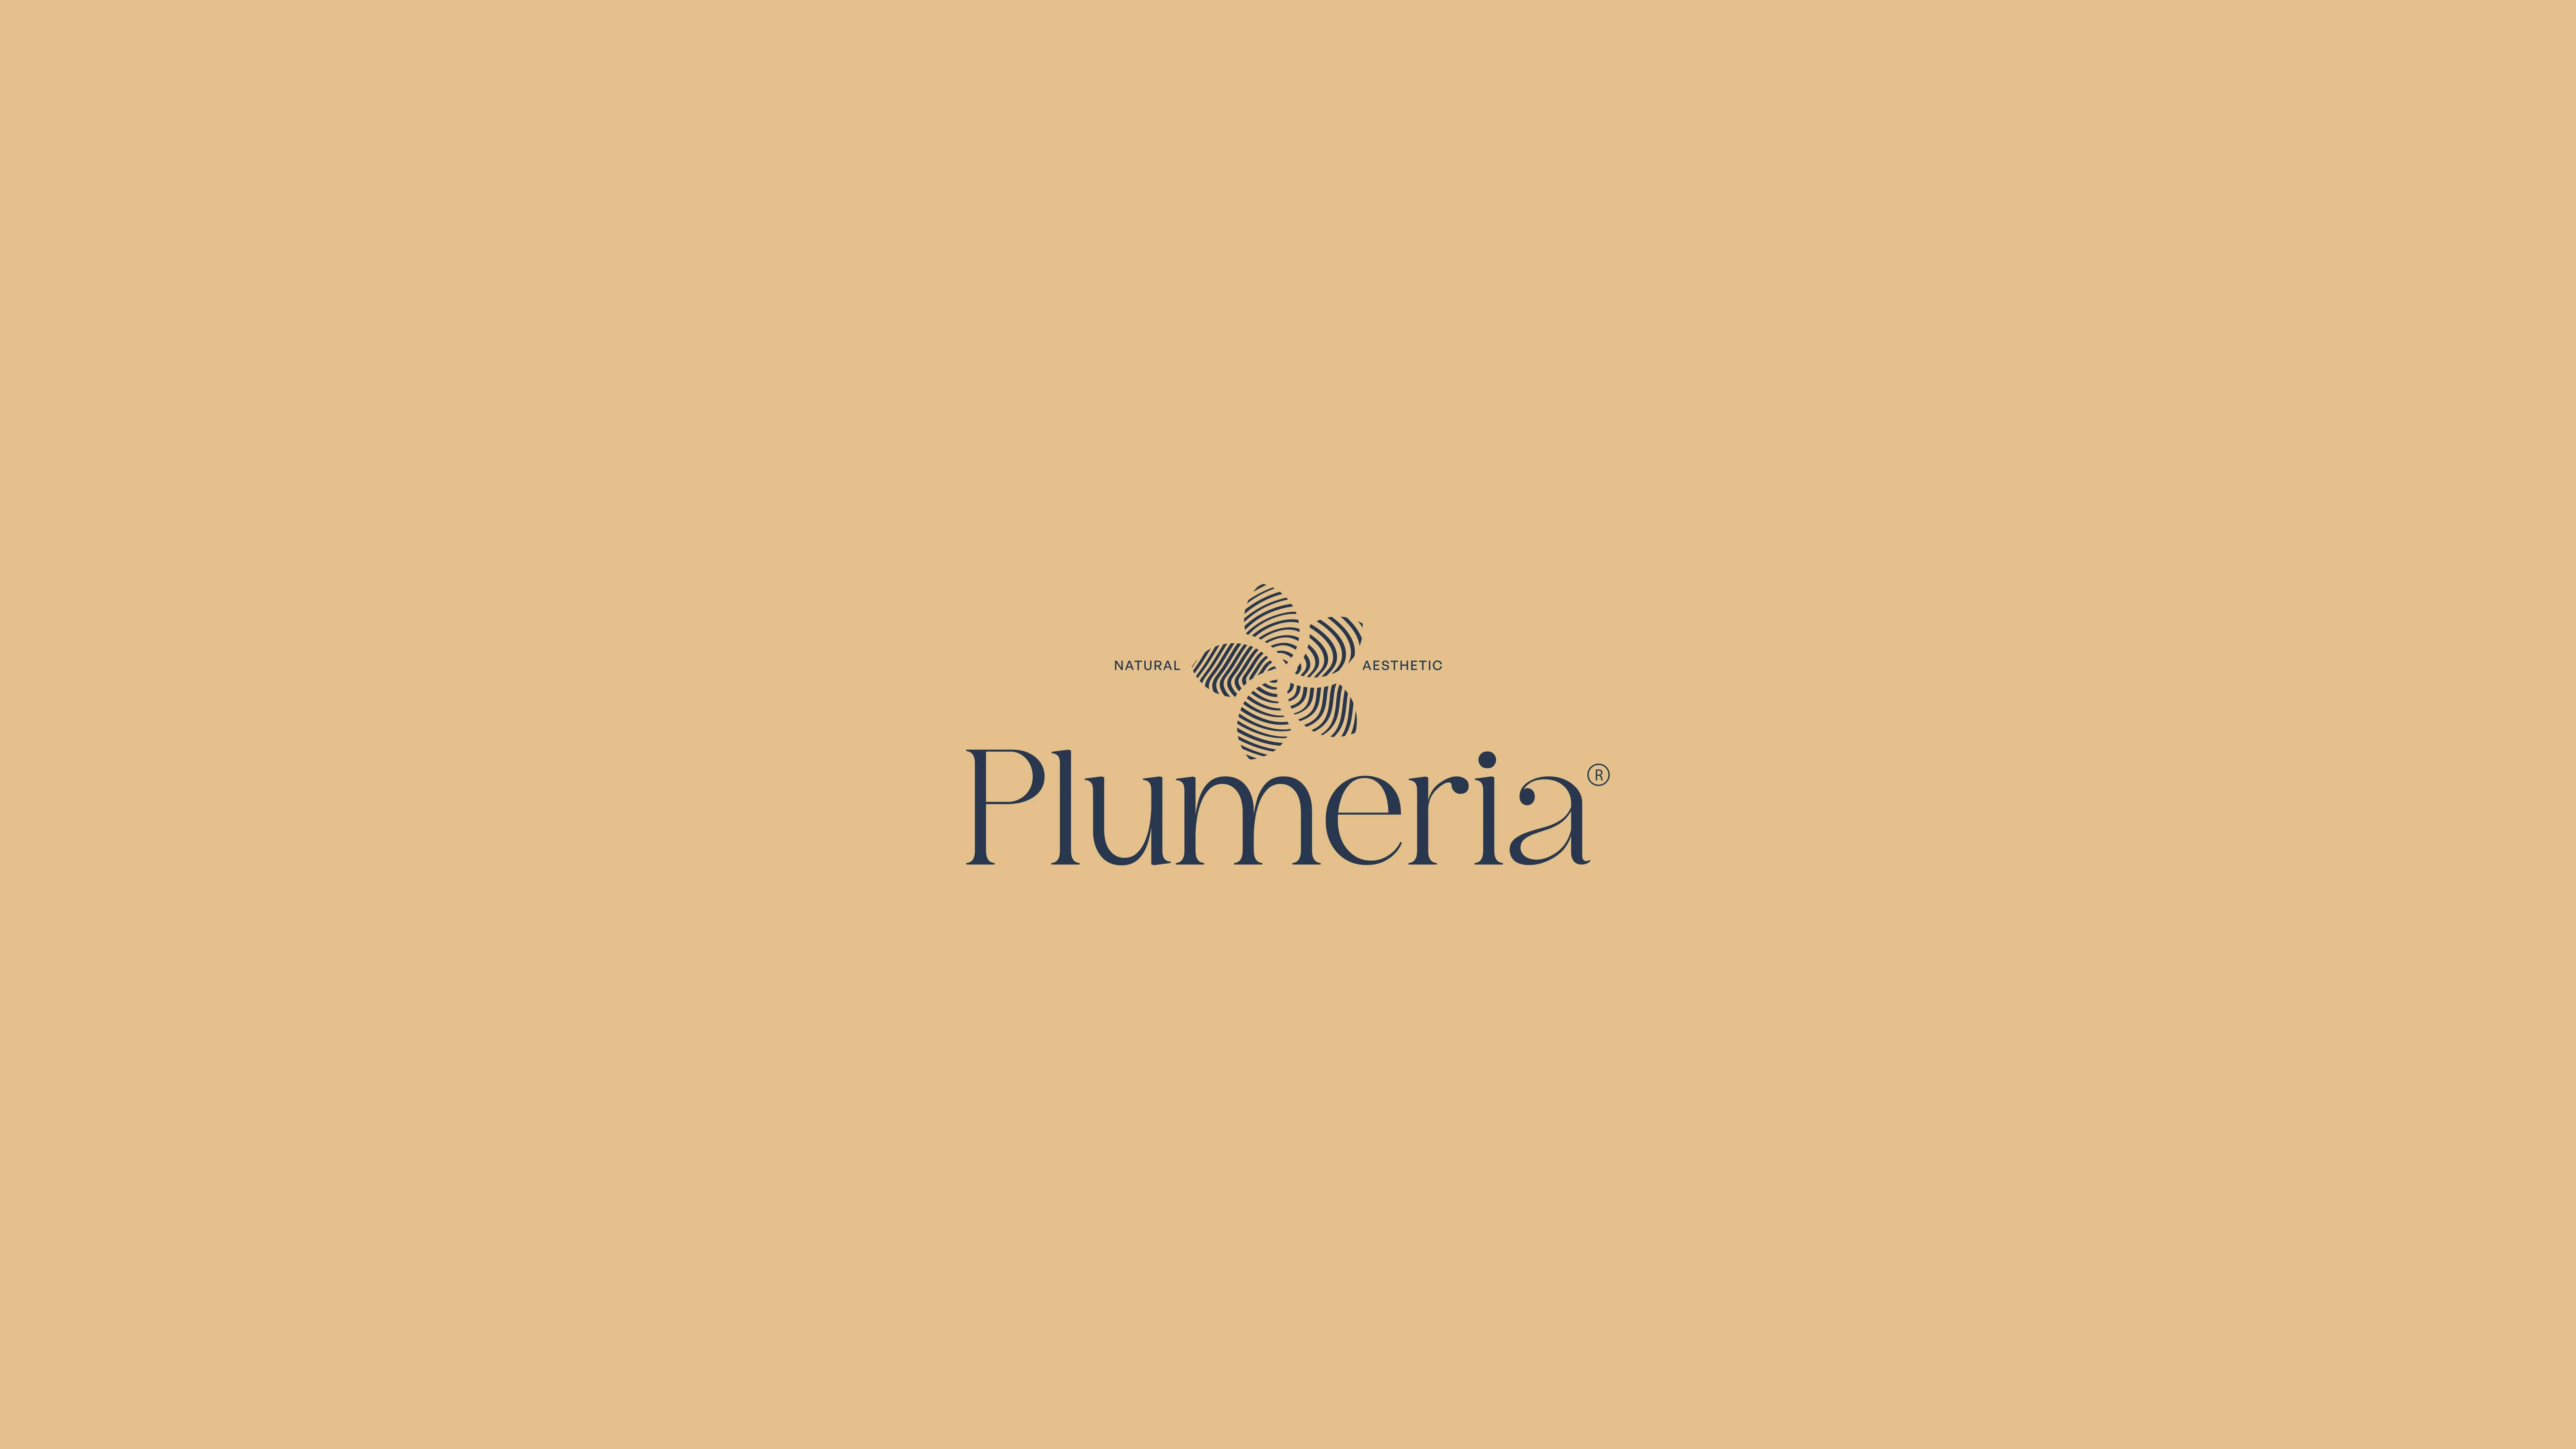 Plumeria Markalama Tasarımı